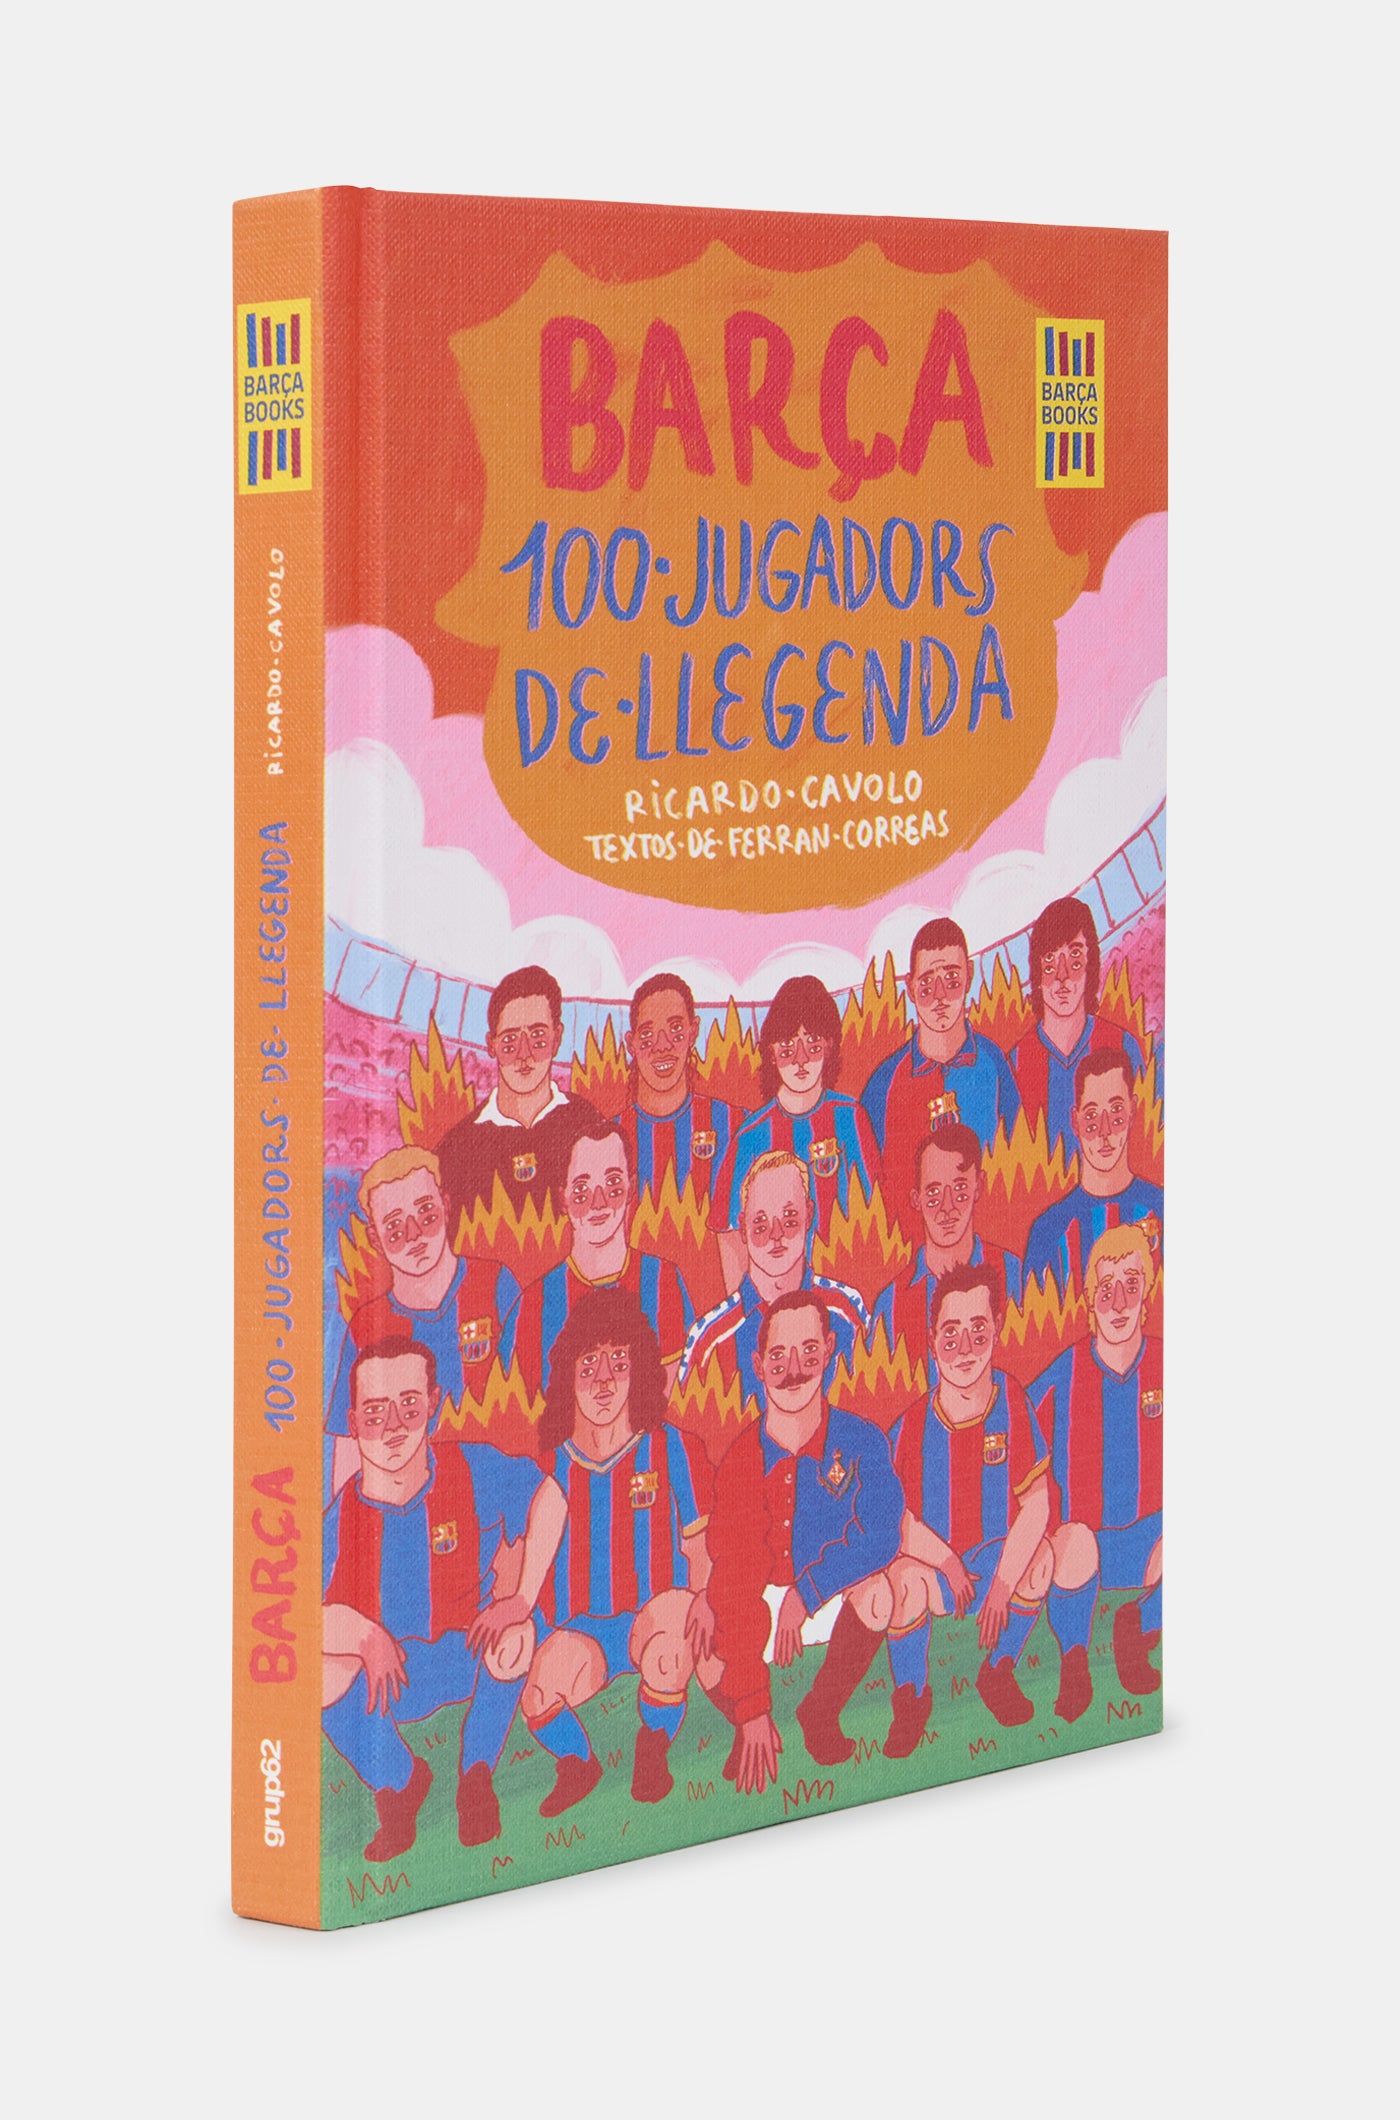 Book "Barça. 100 jugadors de llegenda"